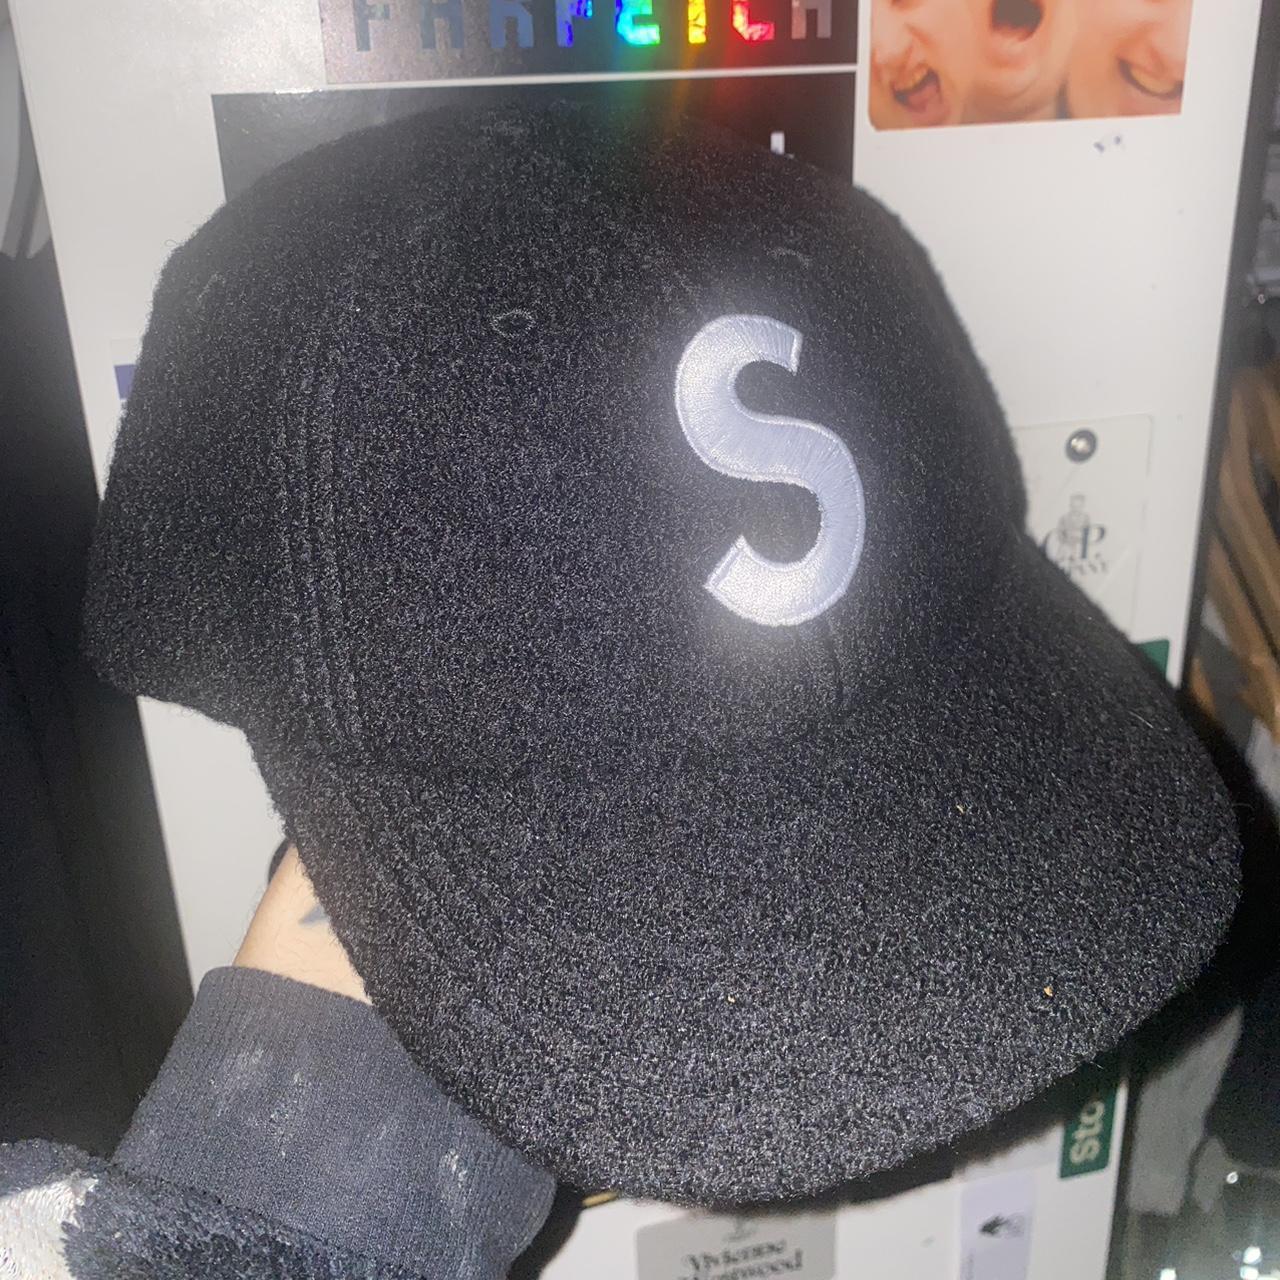 Supreme Brand New Tank 5-Panel Hat #Supreme #Original - Depop